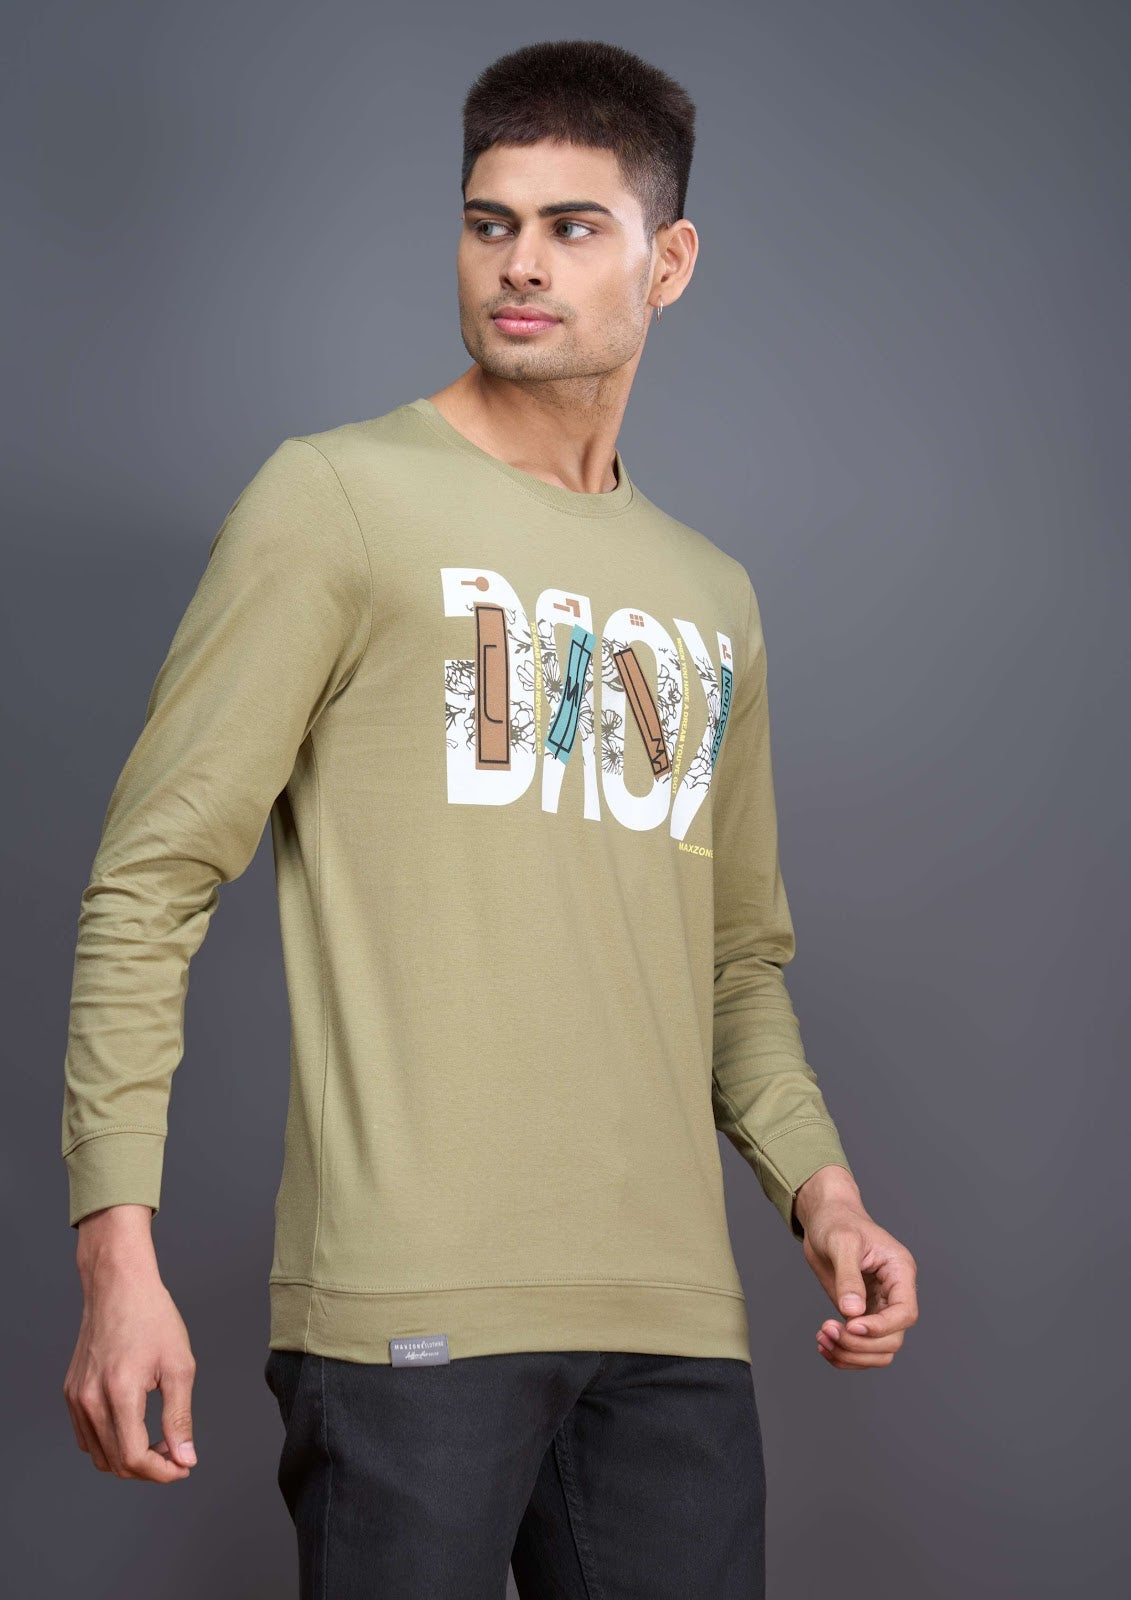 Iho E 80 Maxzone Clothing Cotton Mens Tshirts